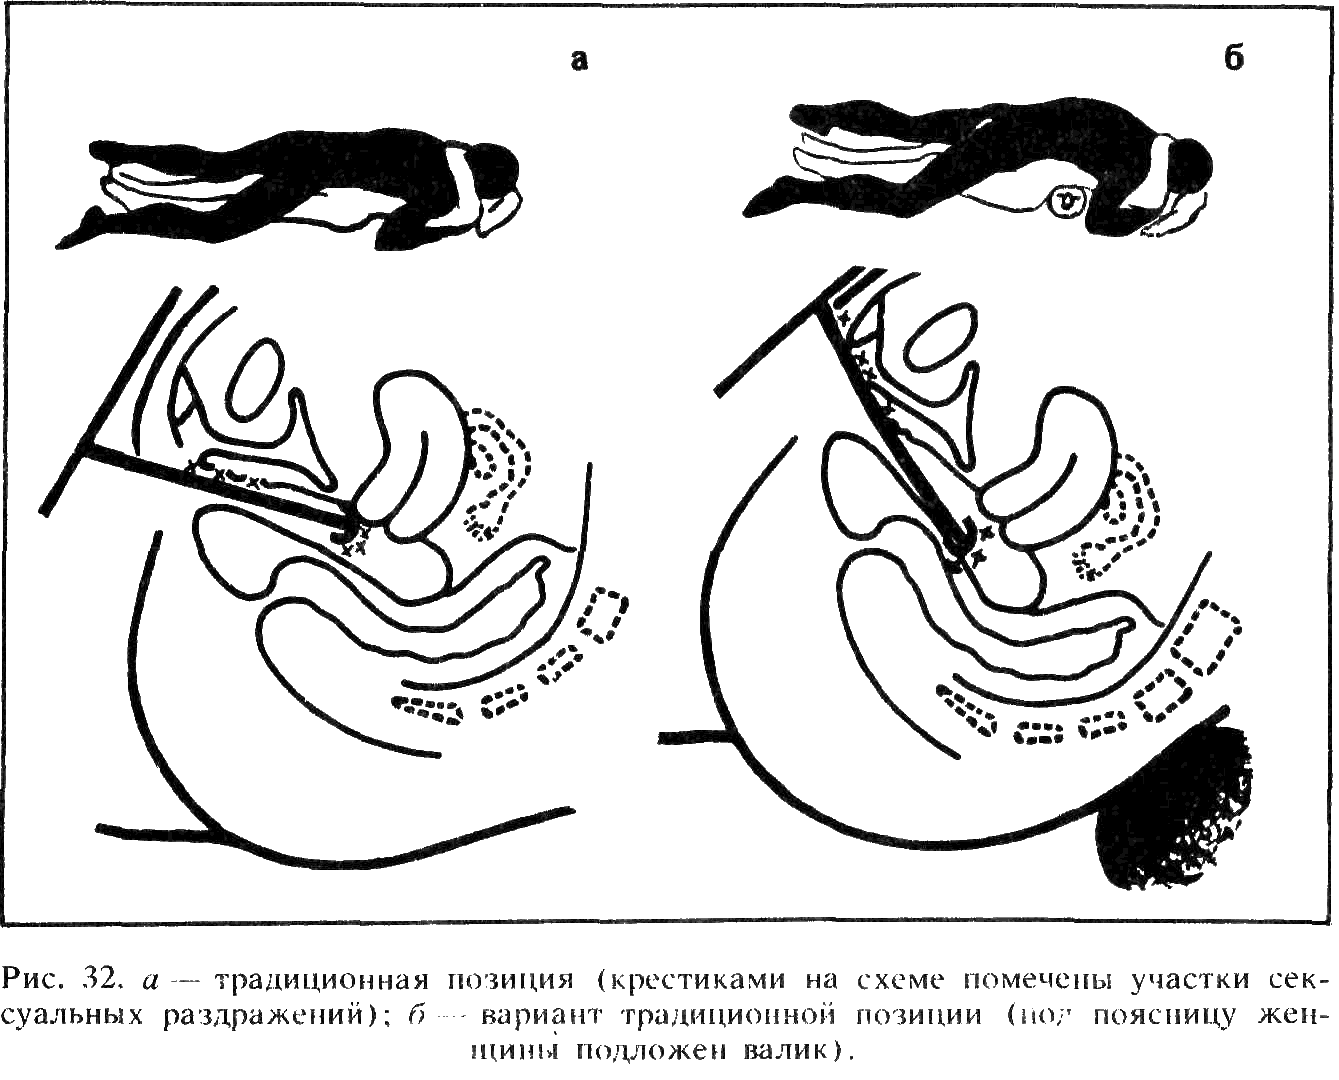 Опущение мочевого пузыря, матки и прямой кишки (пролапс тазовых органов)